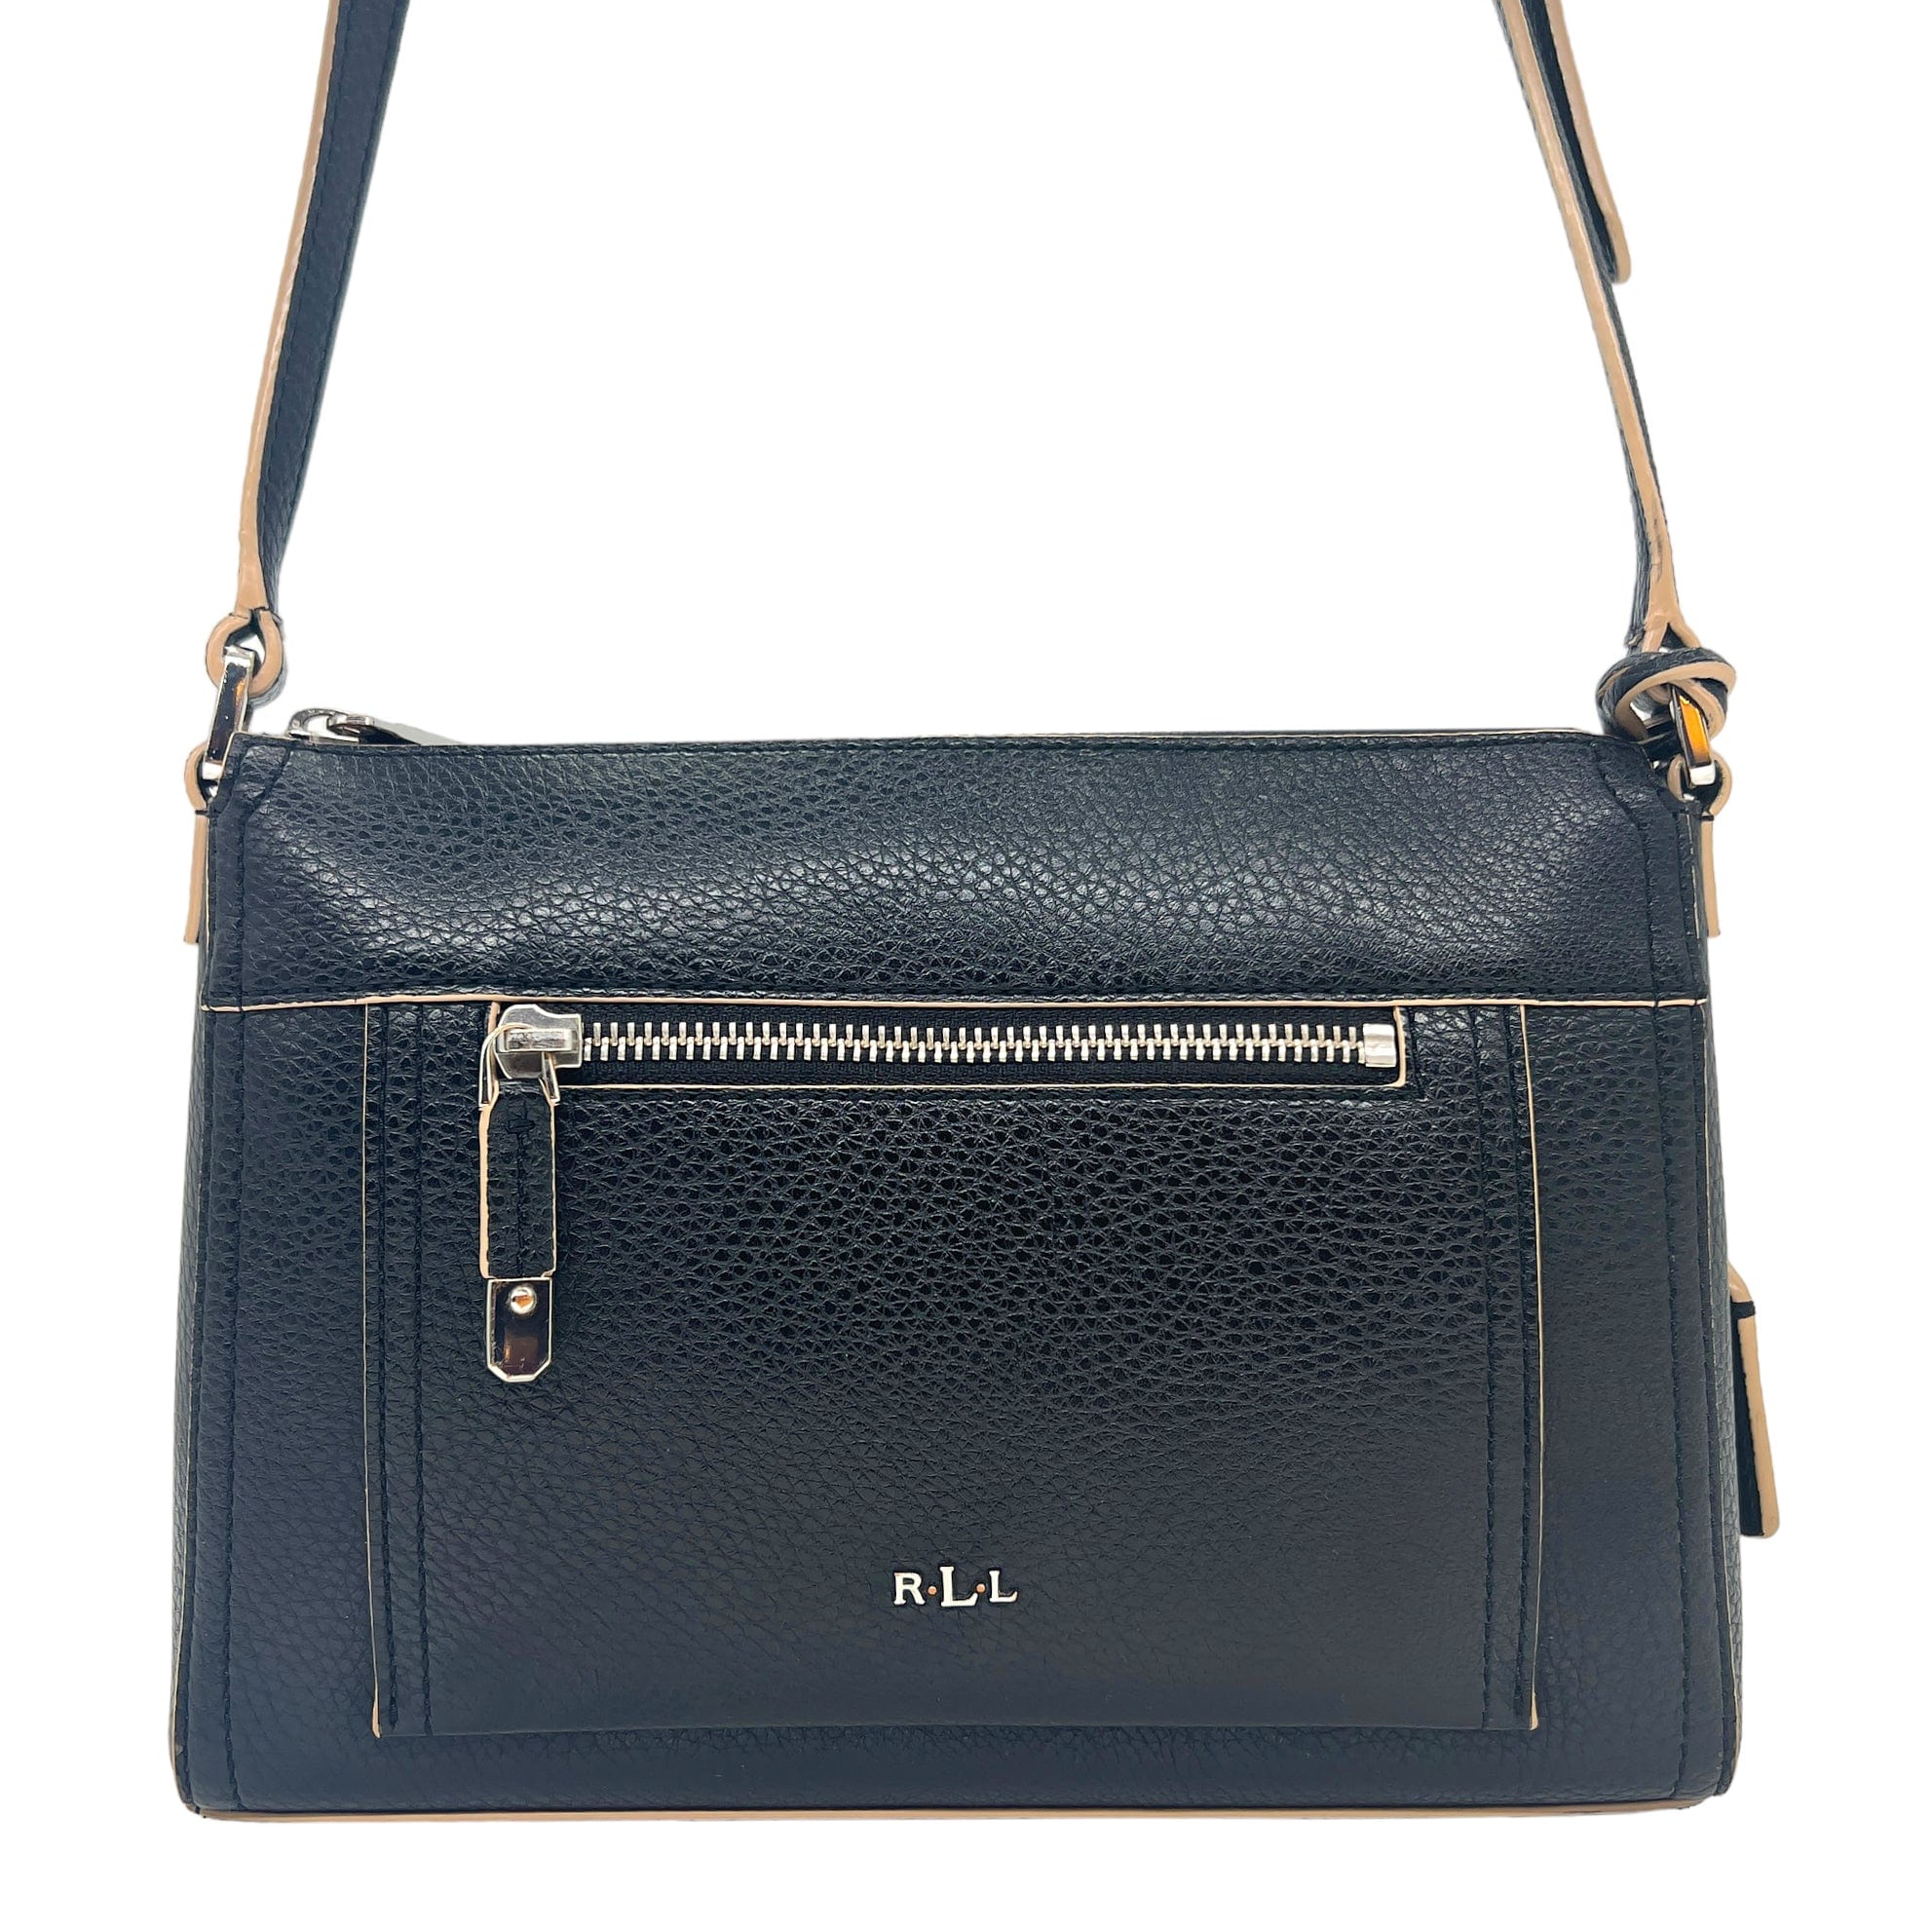 Ralph Lauren, Bags, Ralph Lauren Rll Bag One Large Pocket Inside Brand  New